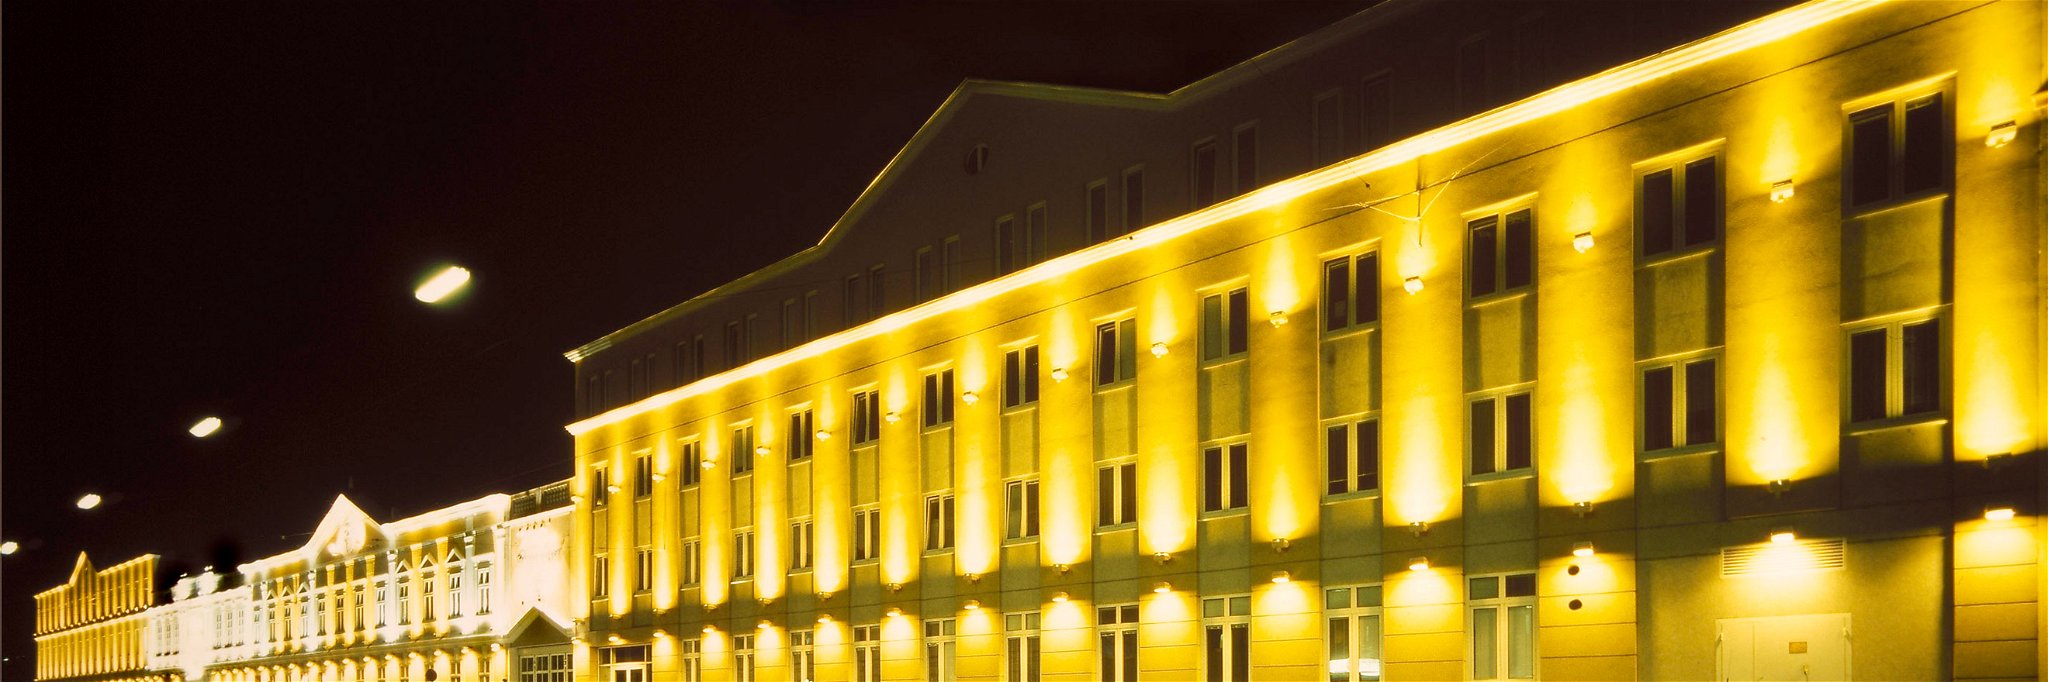 Ab dem Jahr 2019 gehen in der Wiener Produktionsstätte die Lichter aus.